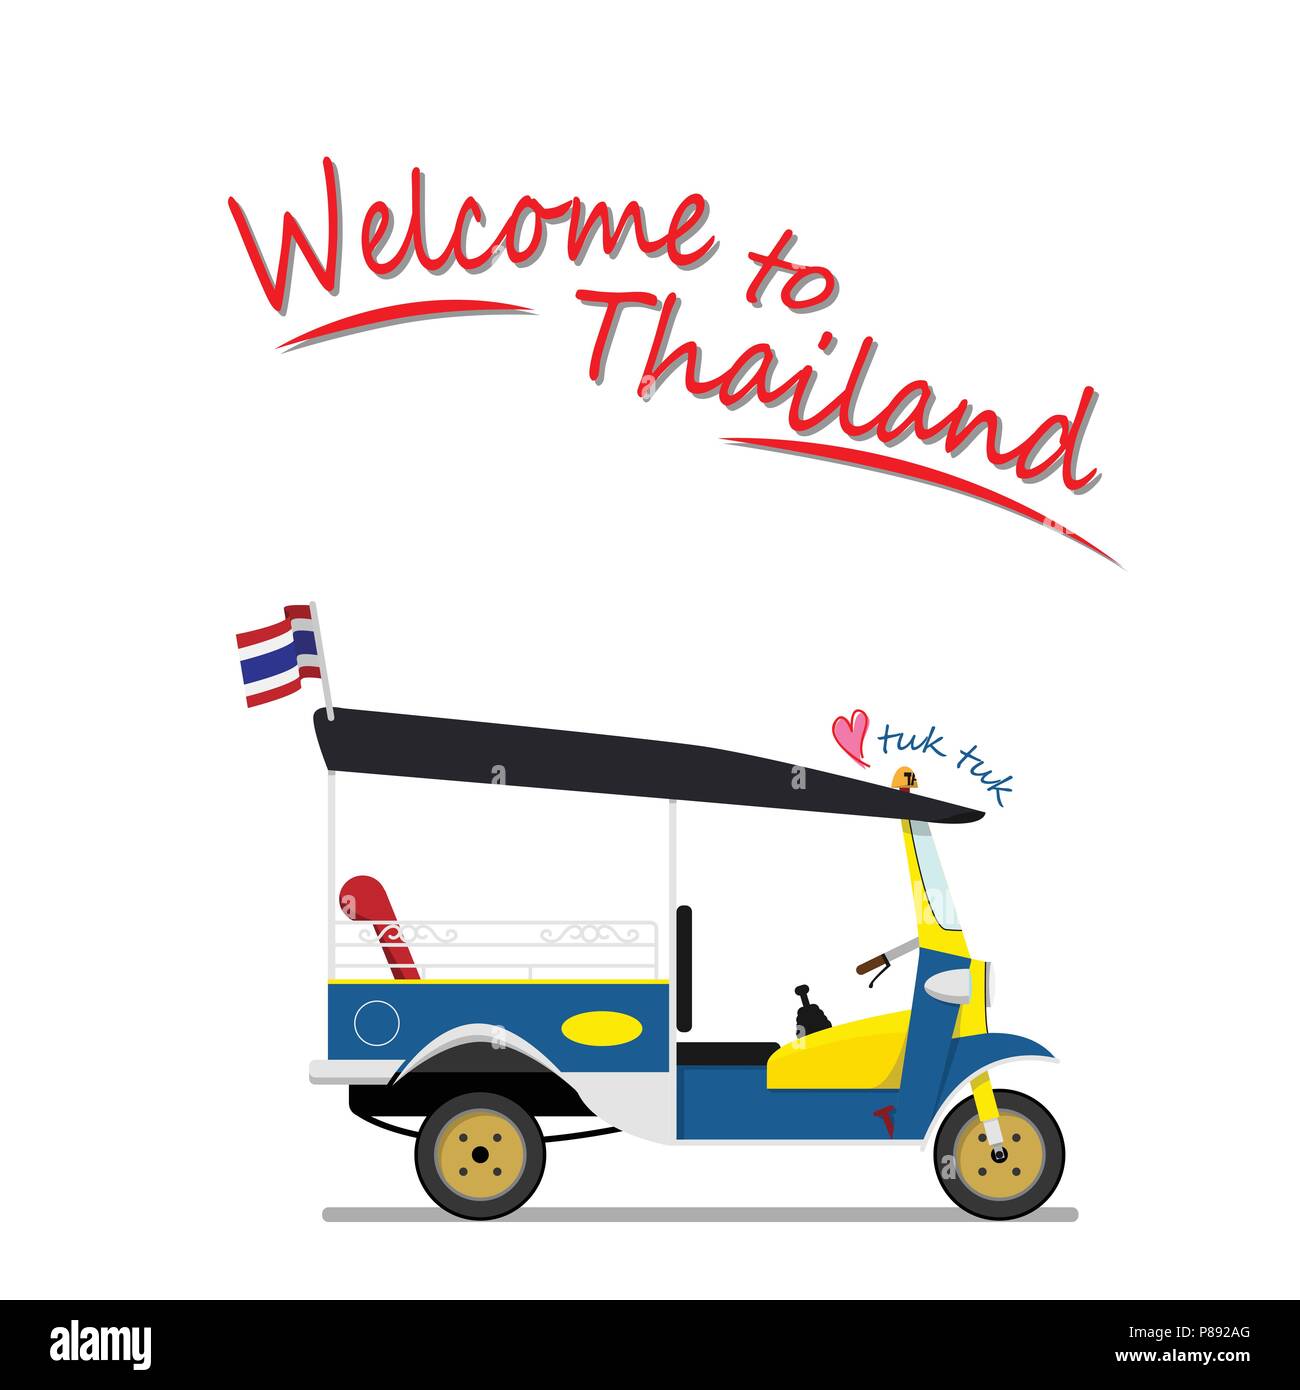 Tuk Tuk est un véhicule taxi local avec trois roues. ride tuk tuk est activité la plus populaire pour les touristes pour visiter l'attraction autour de Bangkok, Thail Illustration de Vecteur